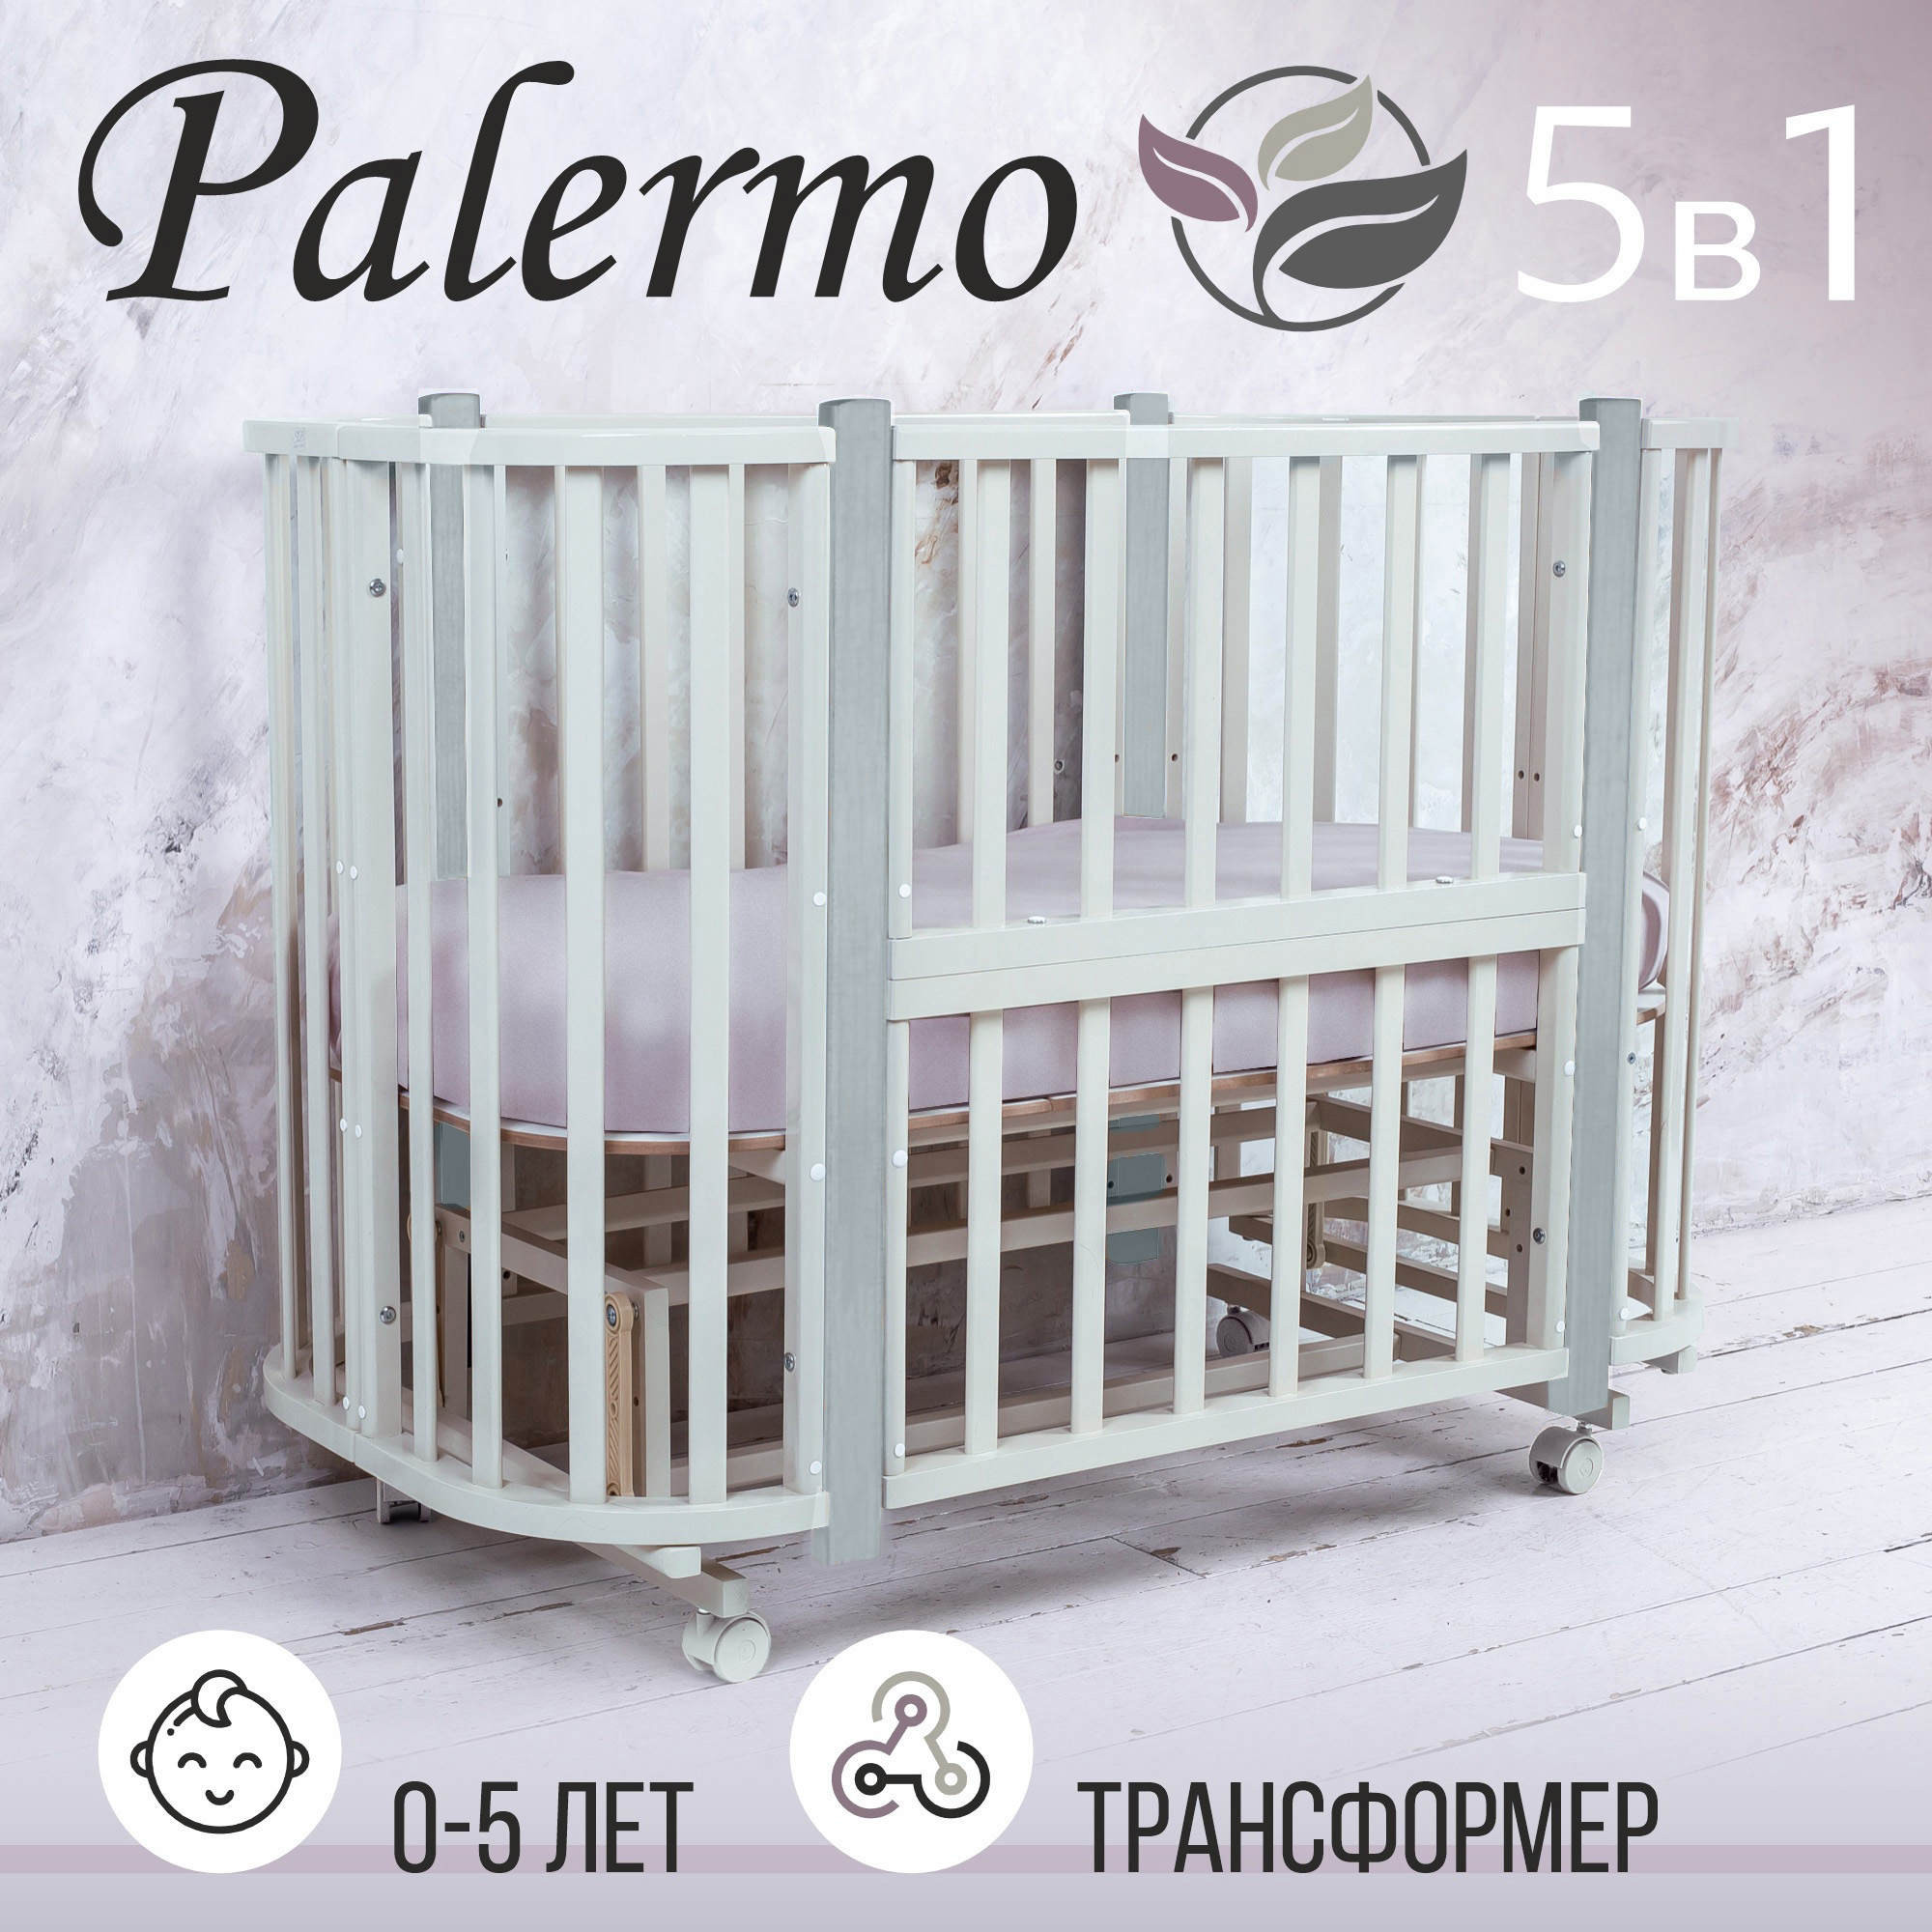 Кровать-трансформер Sweet Baby 5в1 с маятником Palermo Bianco/Grigio (белый/серый) кроватка трансформер indigo baby sleep 7в1 массив березы белый слоник